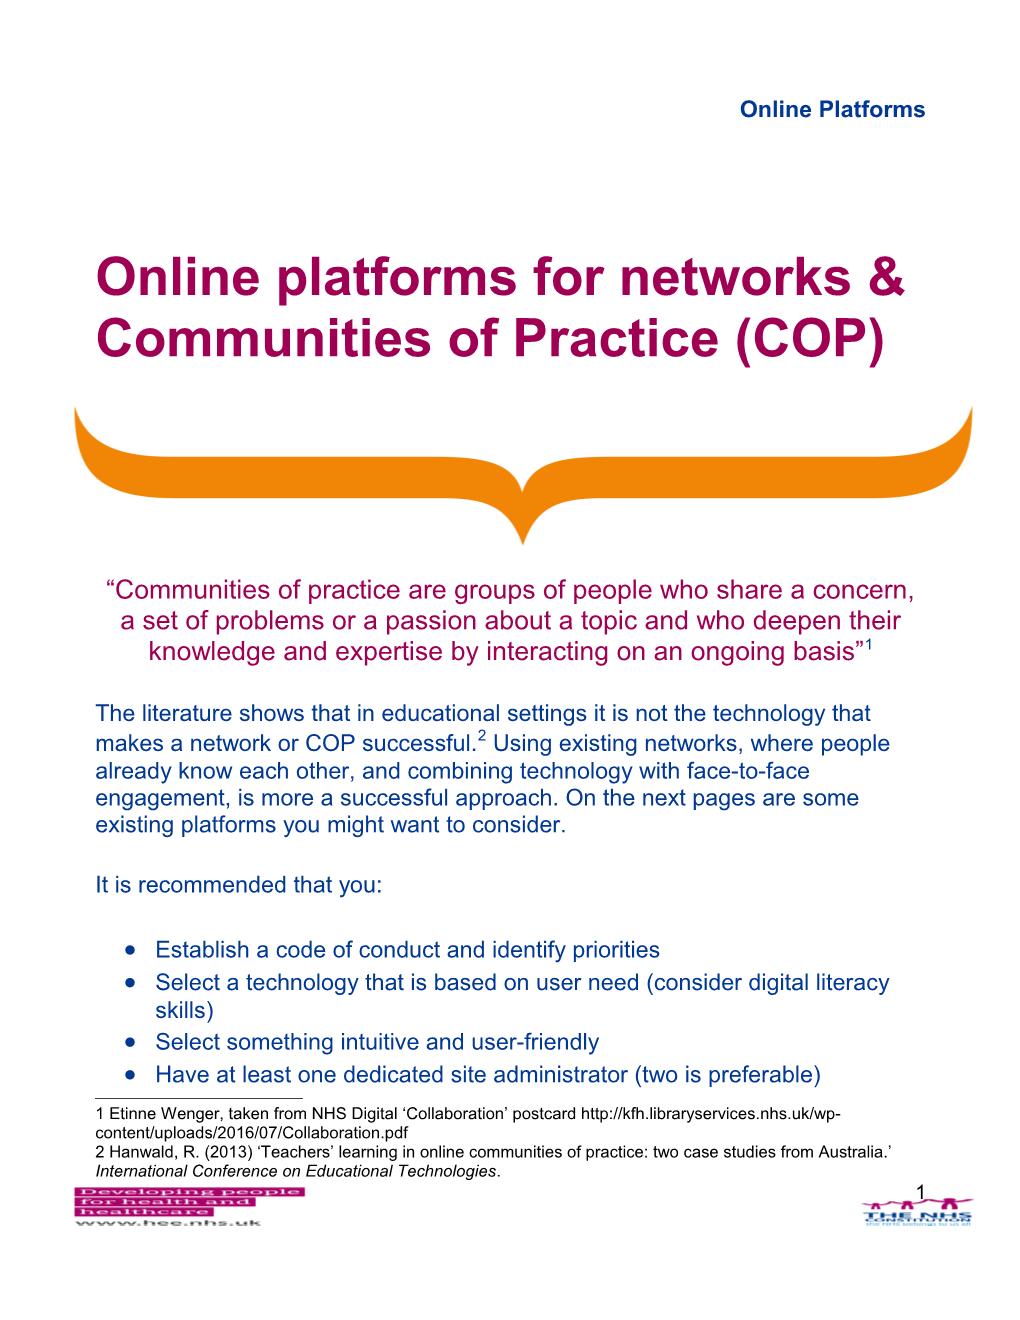 Online Platforms for Networks & Communities of Practice (COP)